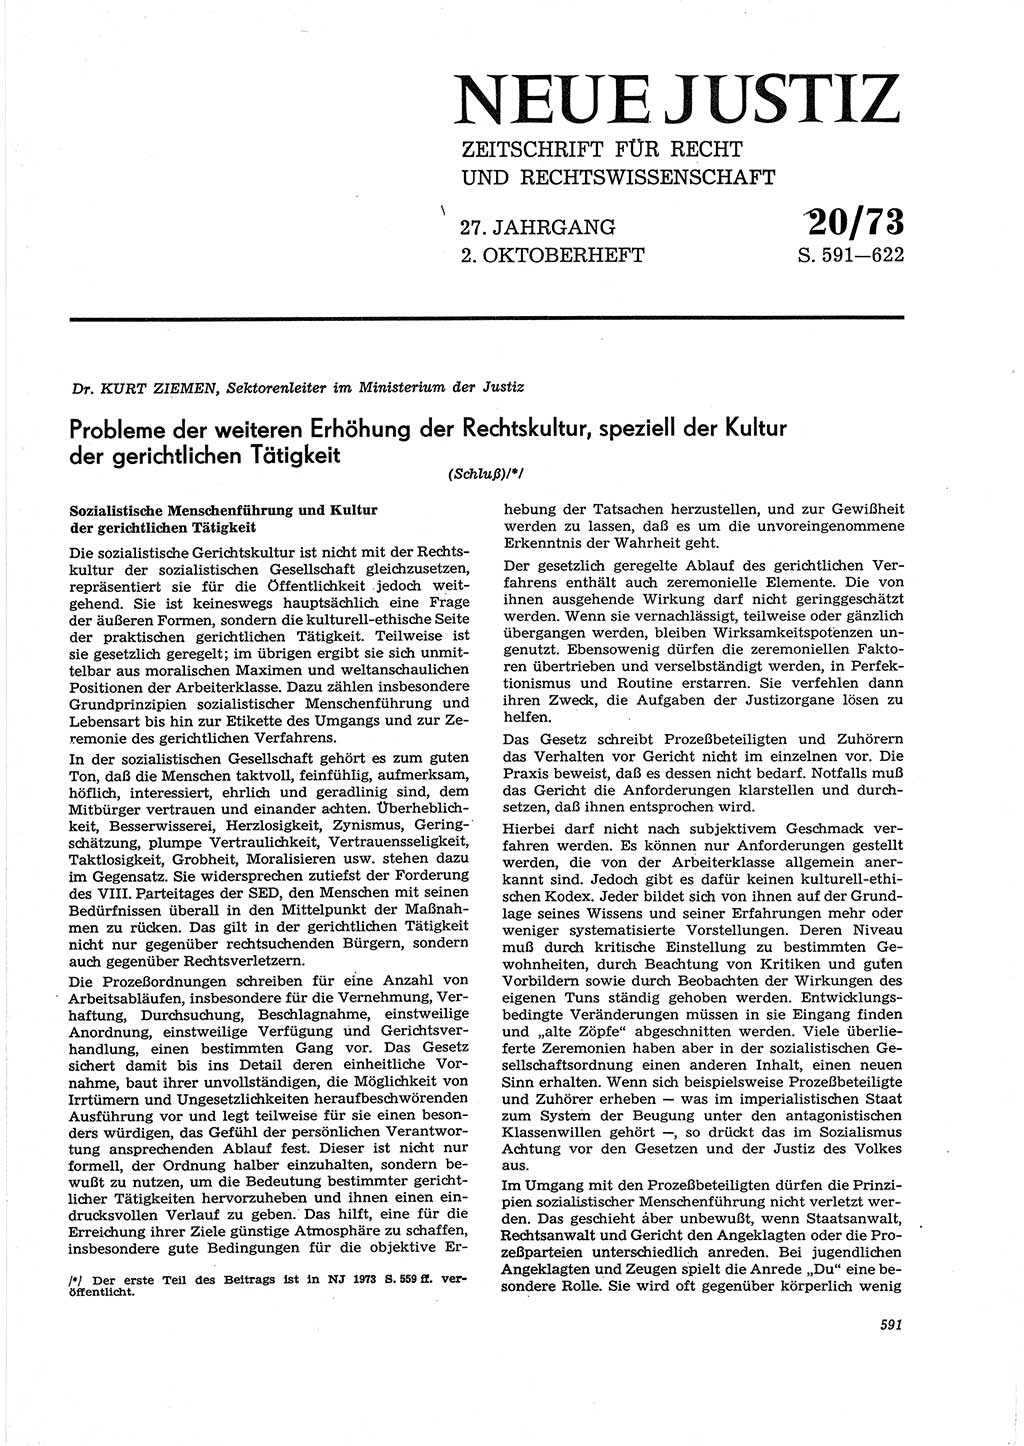 Neue Justiz (NJ), Zeitschrift für Recht und Rechtswissenschaft [Deutsche Demokratische Republik (DDR)], 27. Jahrgang 1973, Seite 591 (NJ DDR 1973, S. 591)